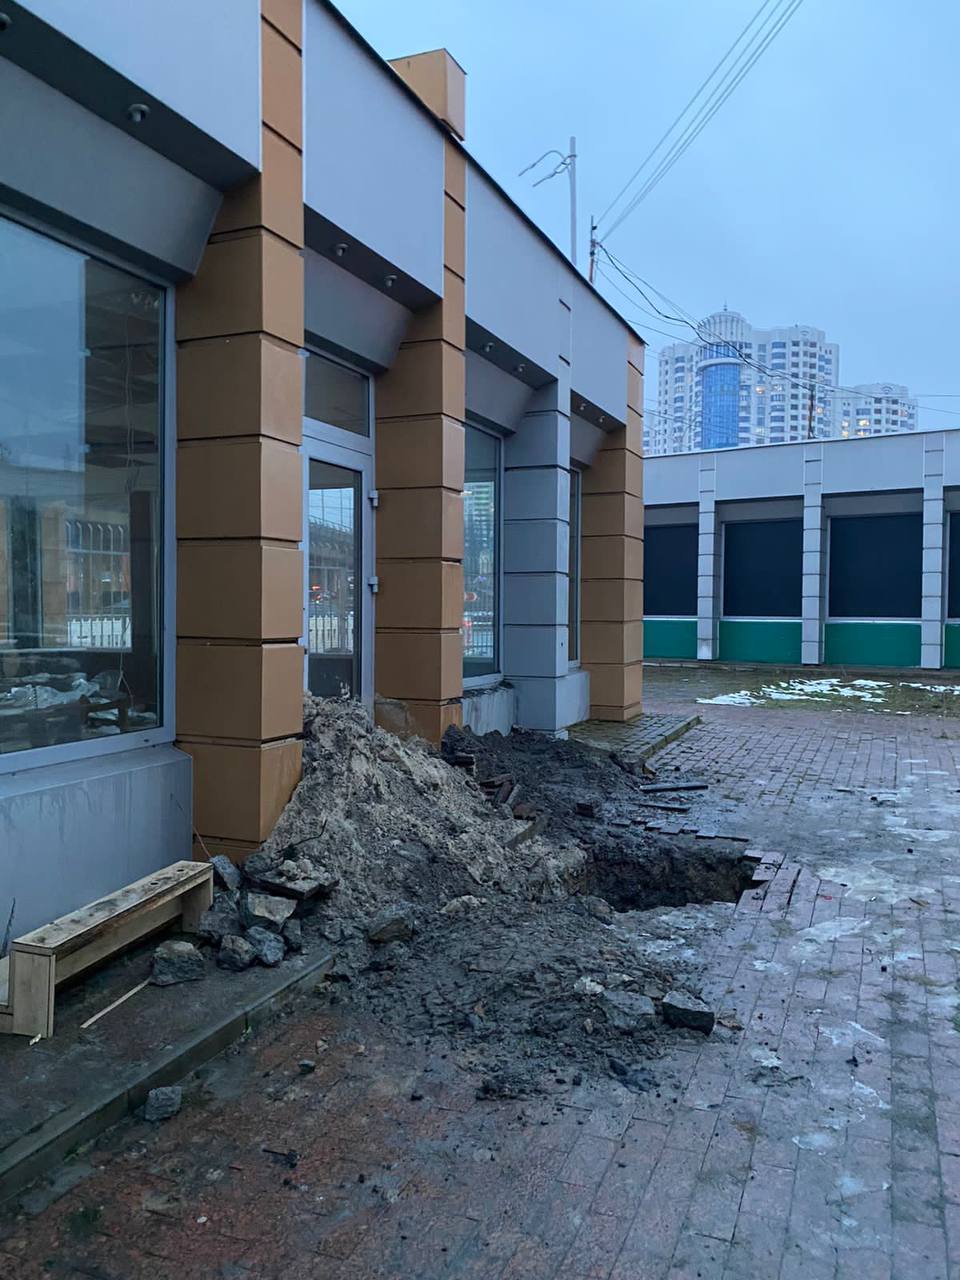 Над станцией метро ”Демеевская” проседает грунт, разрушая торговые павильоны: фото — фото 6